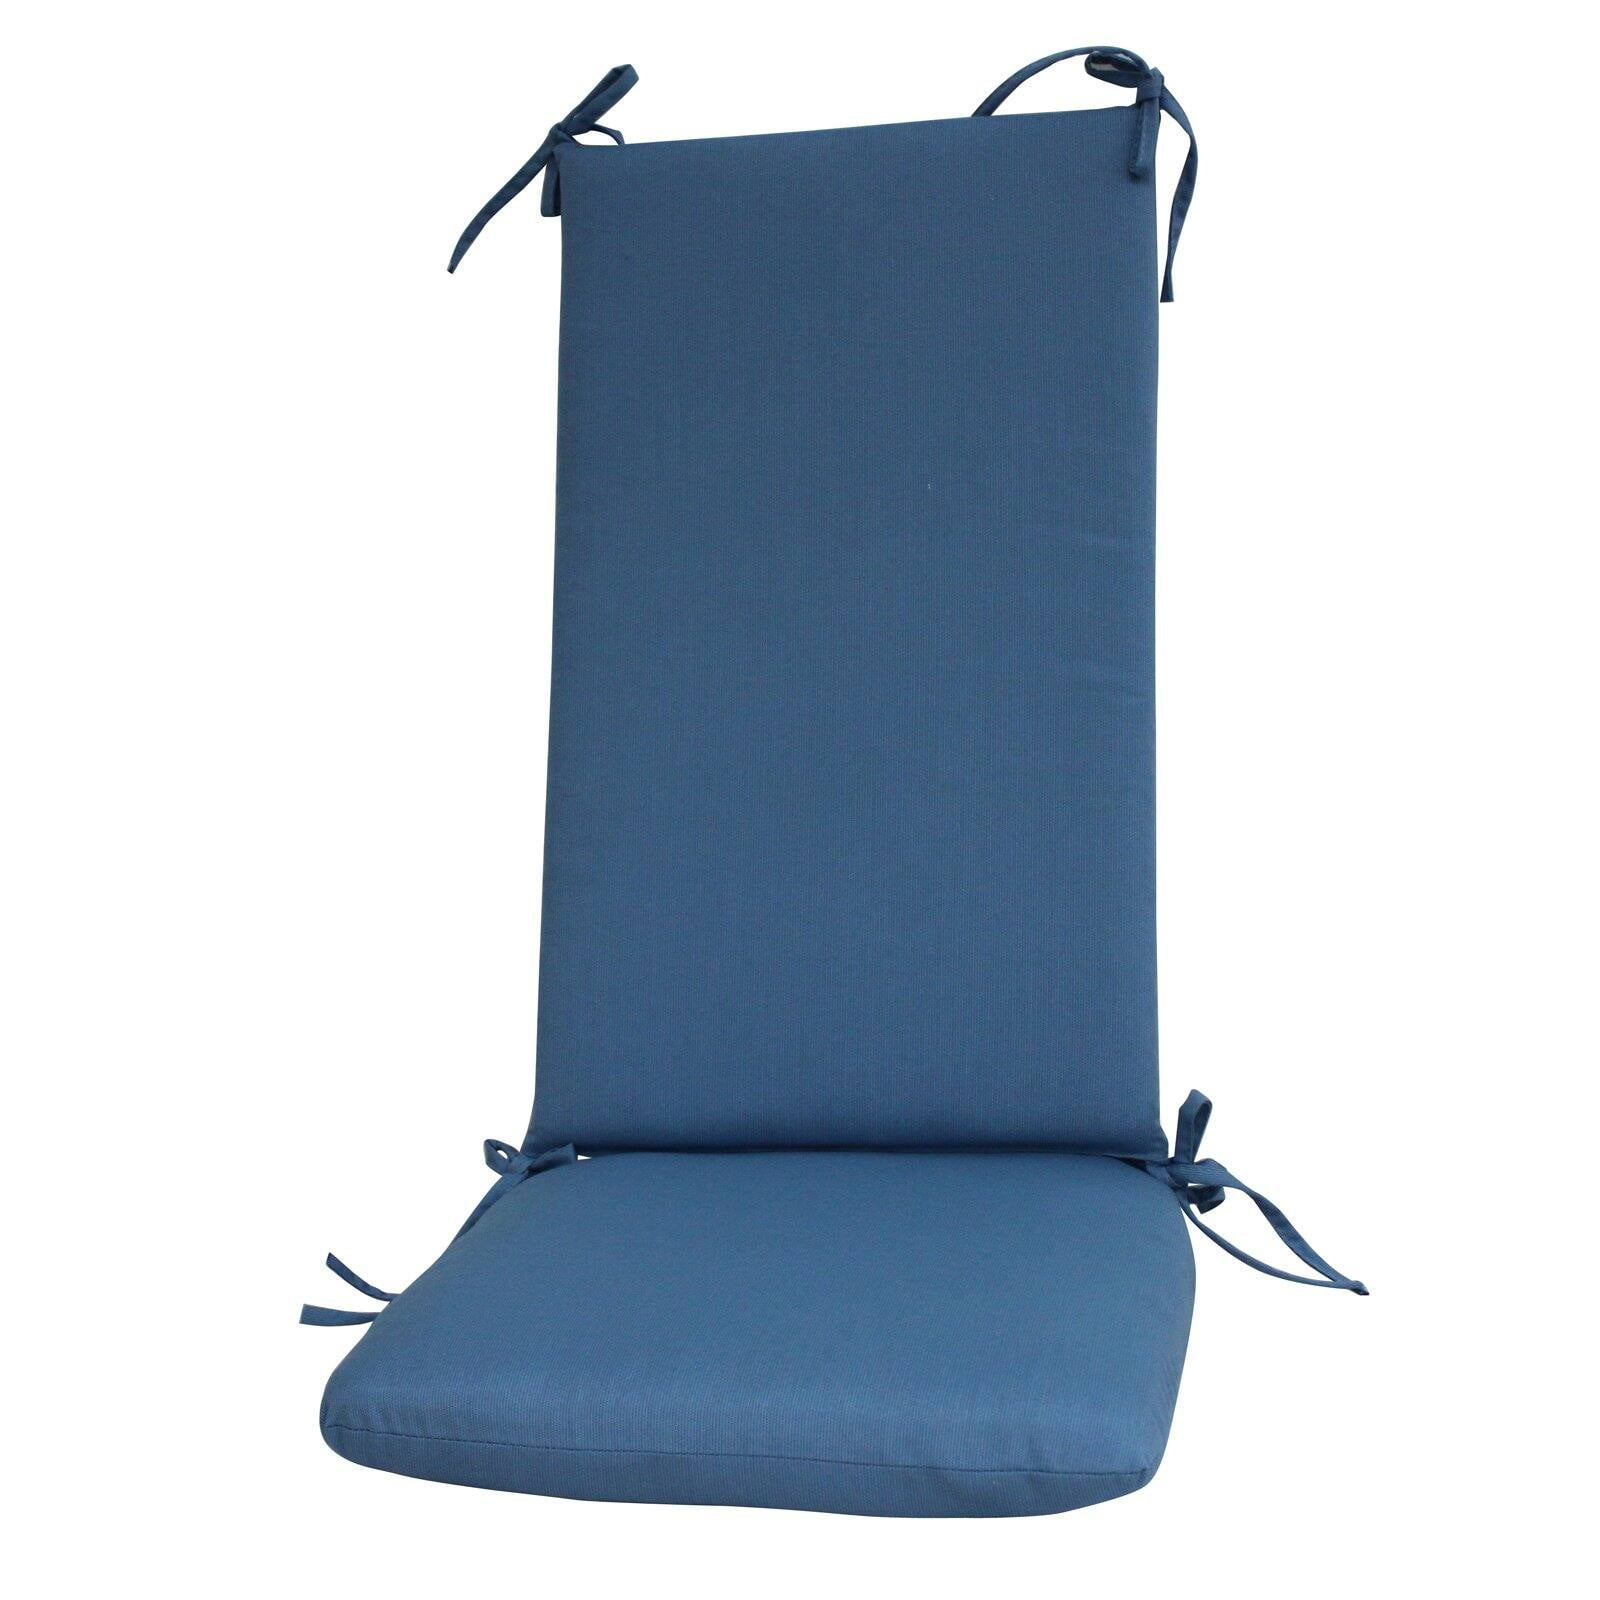 Fiberbuilt Paradise Cushions Sunbrella Rocker Seat And Back Cushion